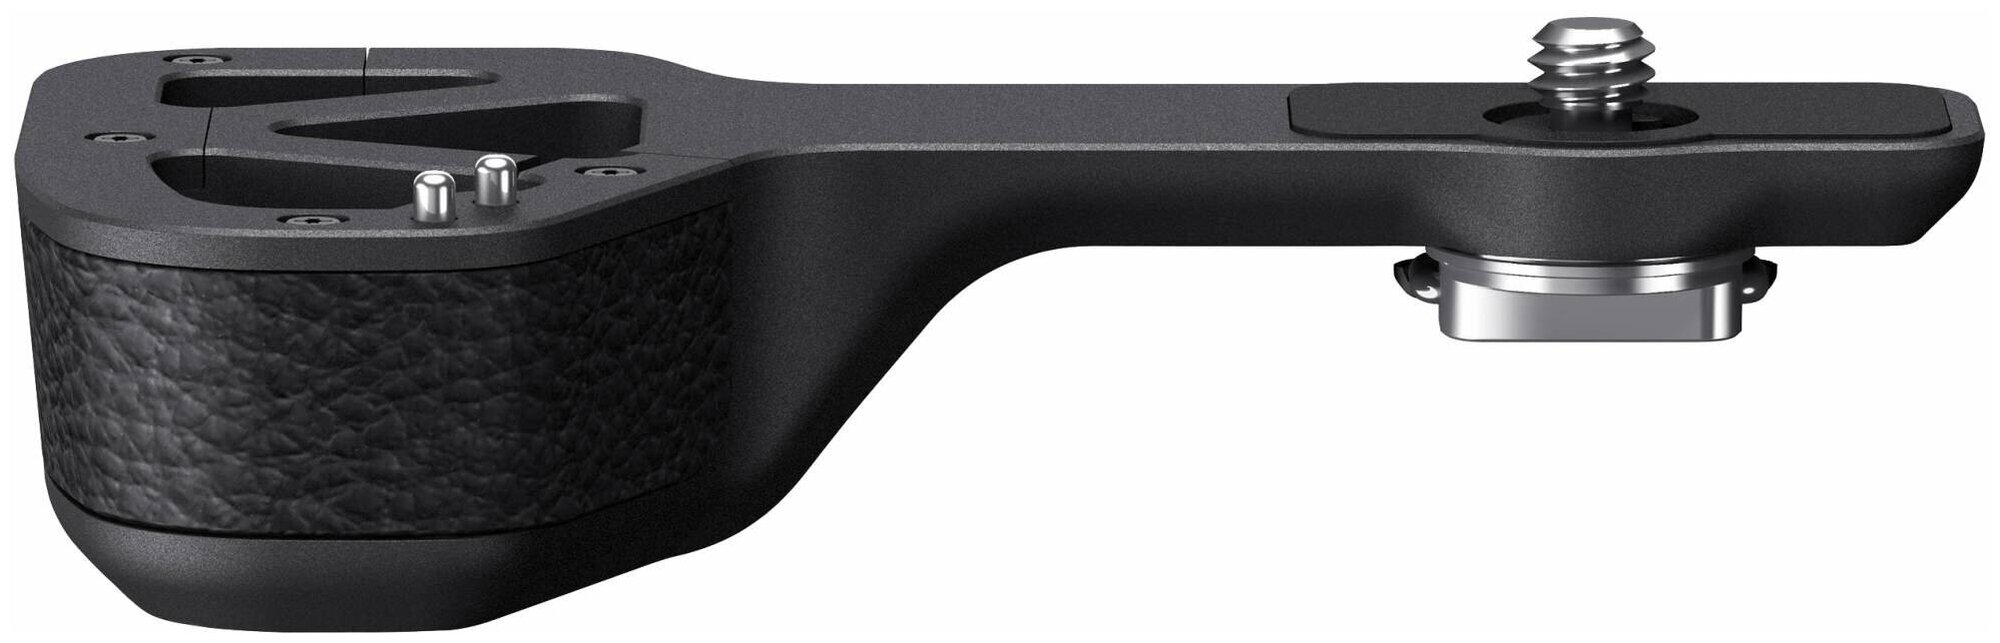 Ручка-хват Sony GP-X1EM Grip Extension для A9 A7R III A7 III